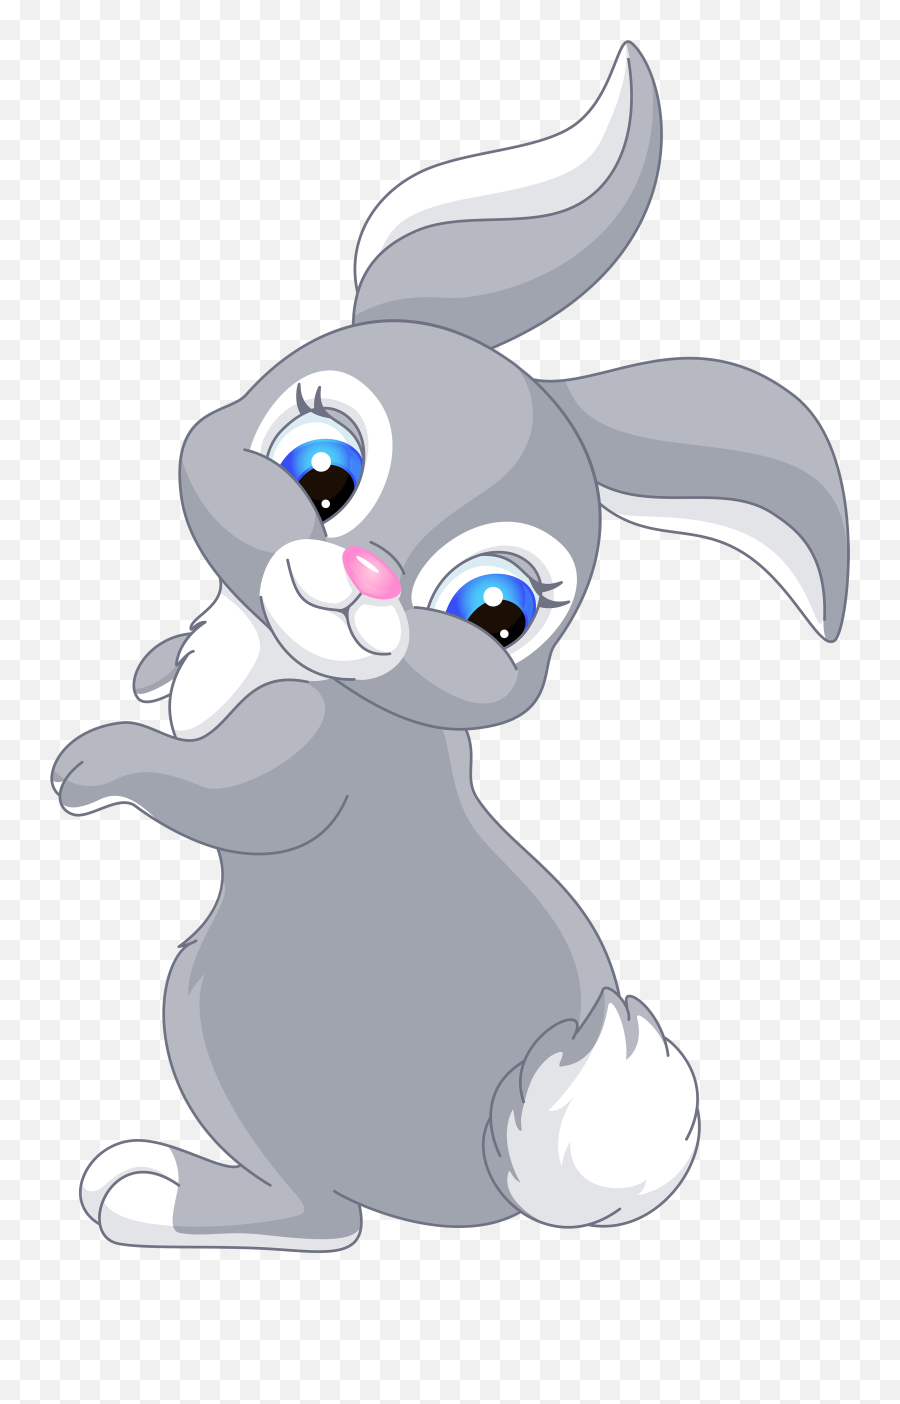 Cute Cartoon Bunny Wallpapers - Top Free Cute Cartoon Bunny Cute Cartoon Easter Bunny Emoji,Kk Emojis